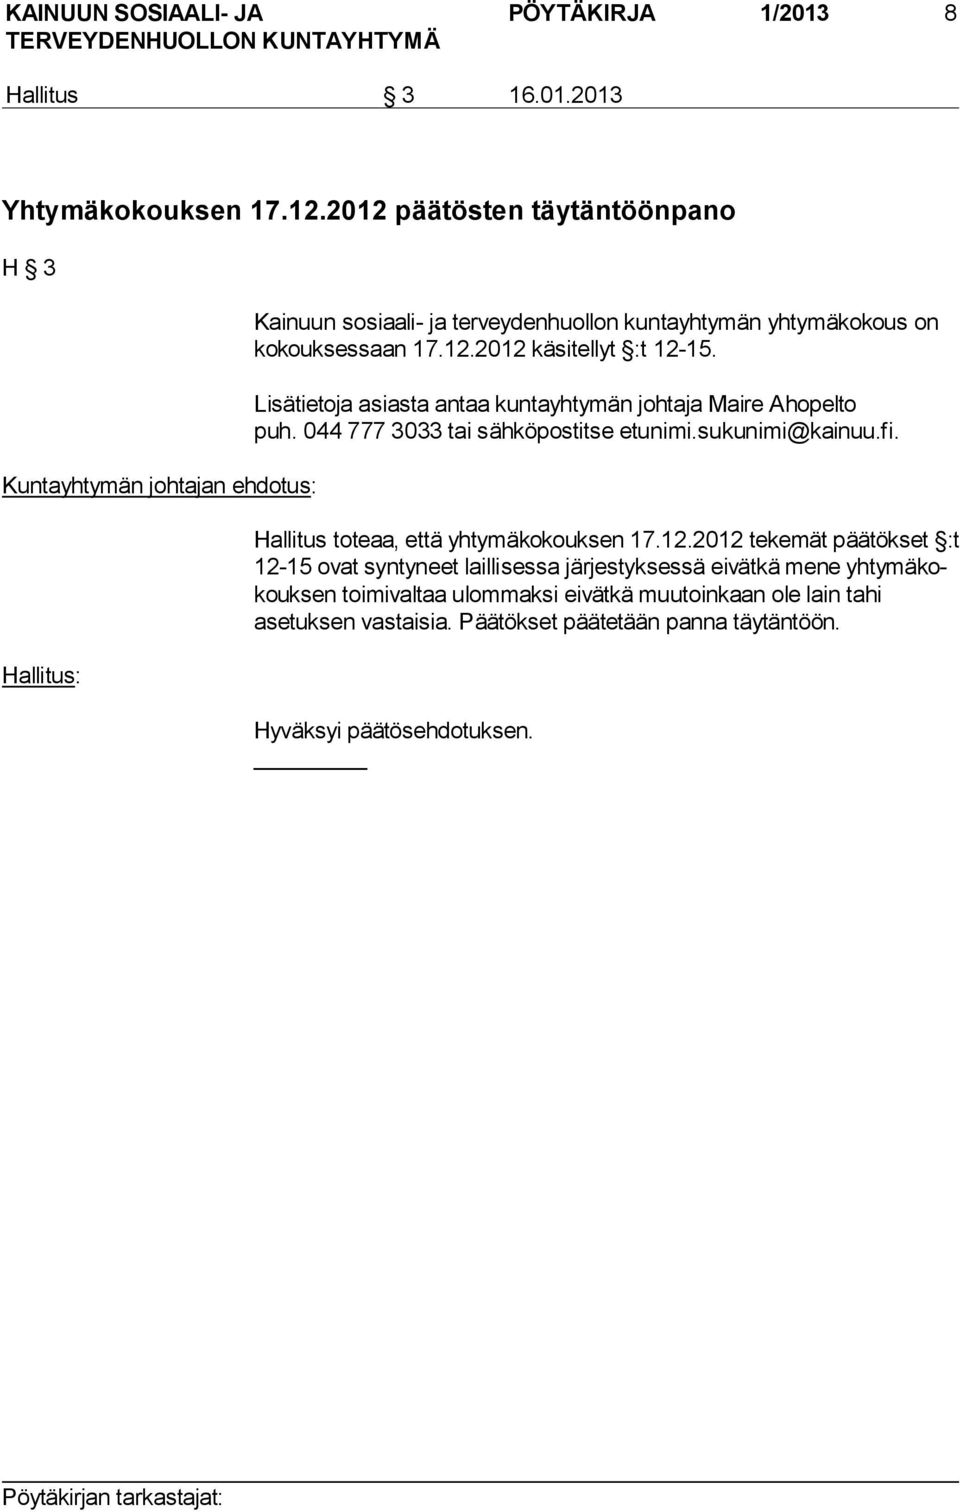 Lisätietoja asiasta antaa kuntayhtymän johtaja Maire Ahopelto puh. 044 777 3033 tai sähköpostitse etunimi.sukunimi@kainuu.fi. Hallitus toteaa, että yhtymäkokouksen 17.